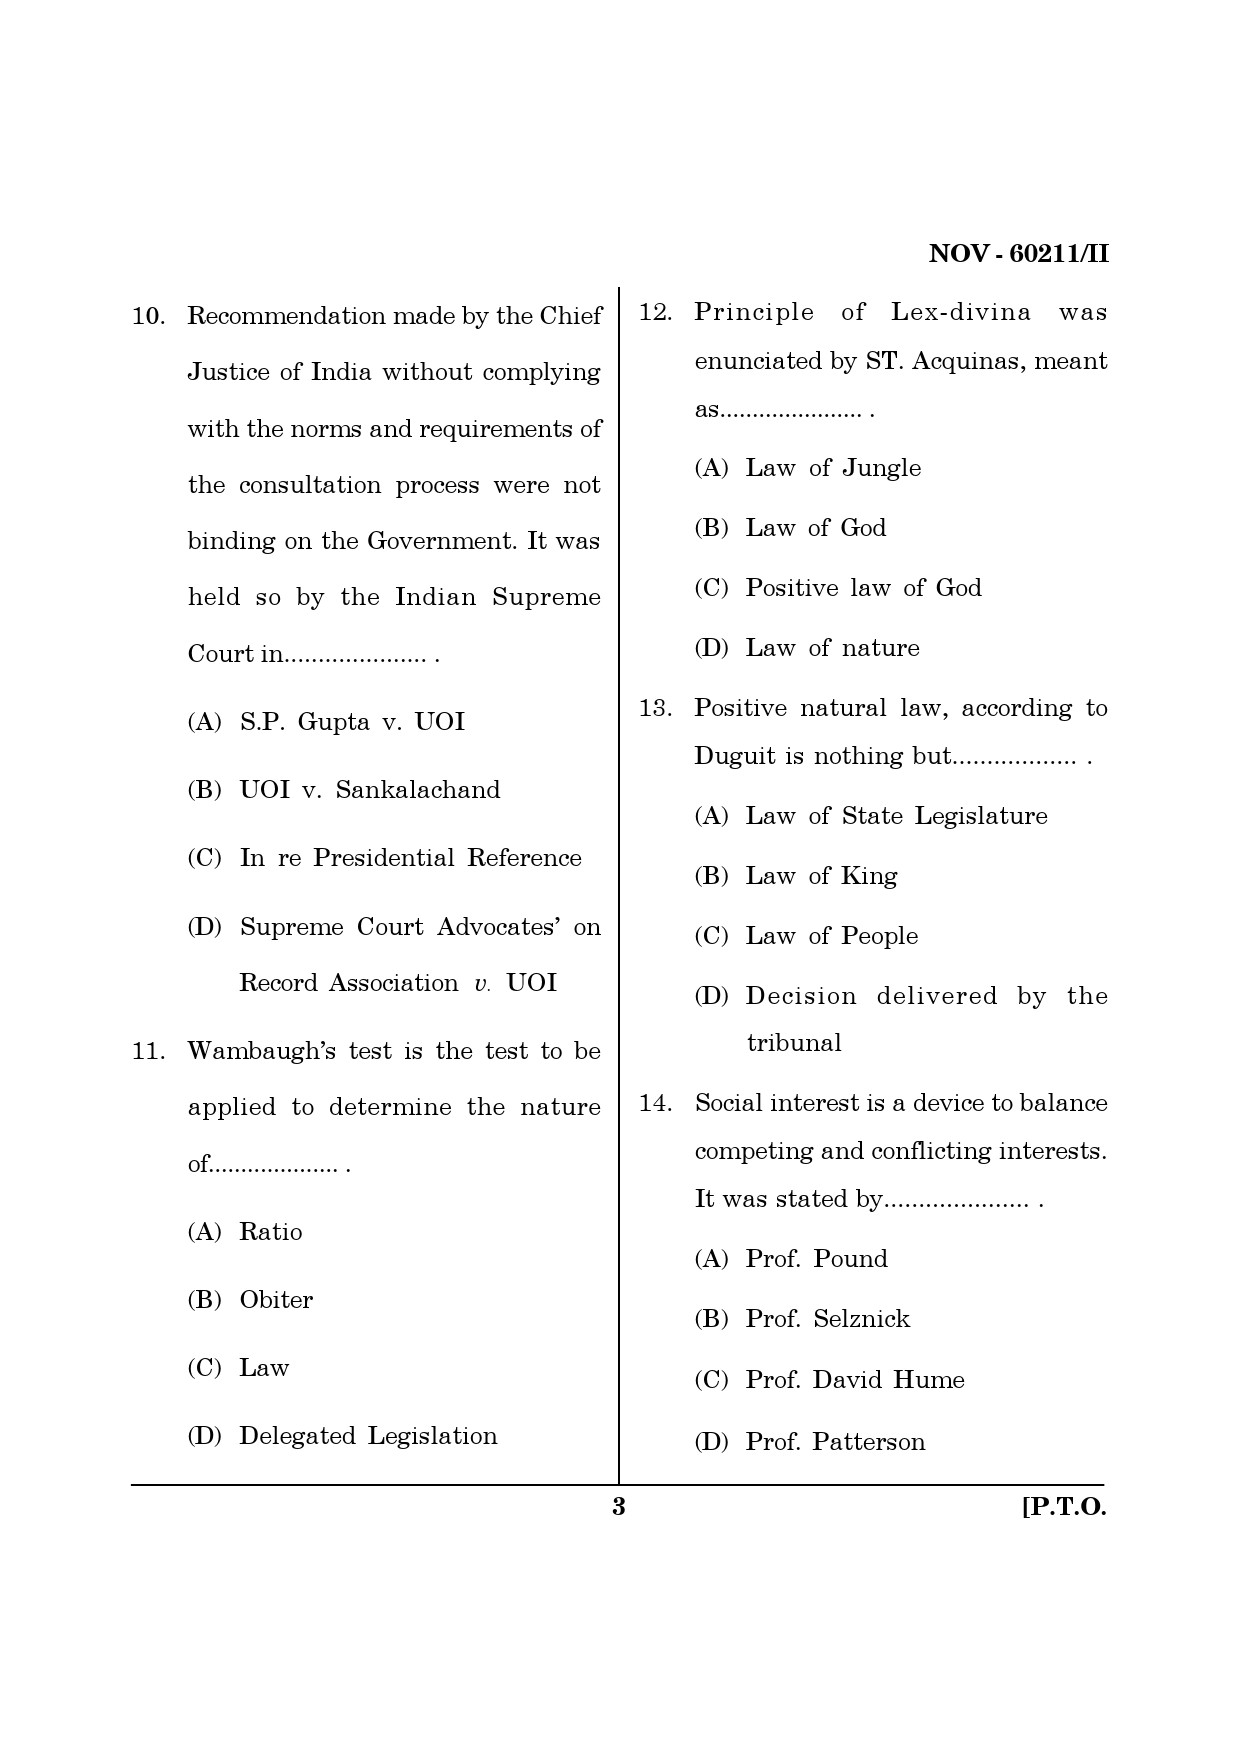 Maharashtra SET Law Question Paper II November 2011 3